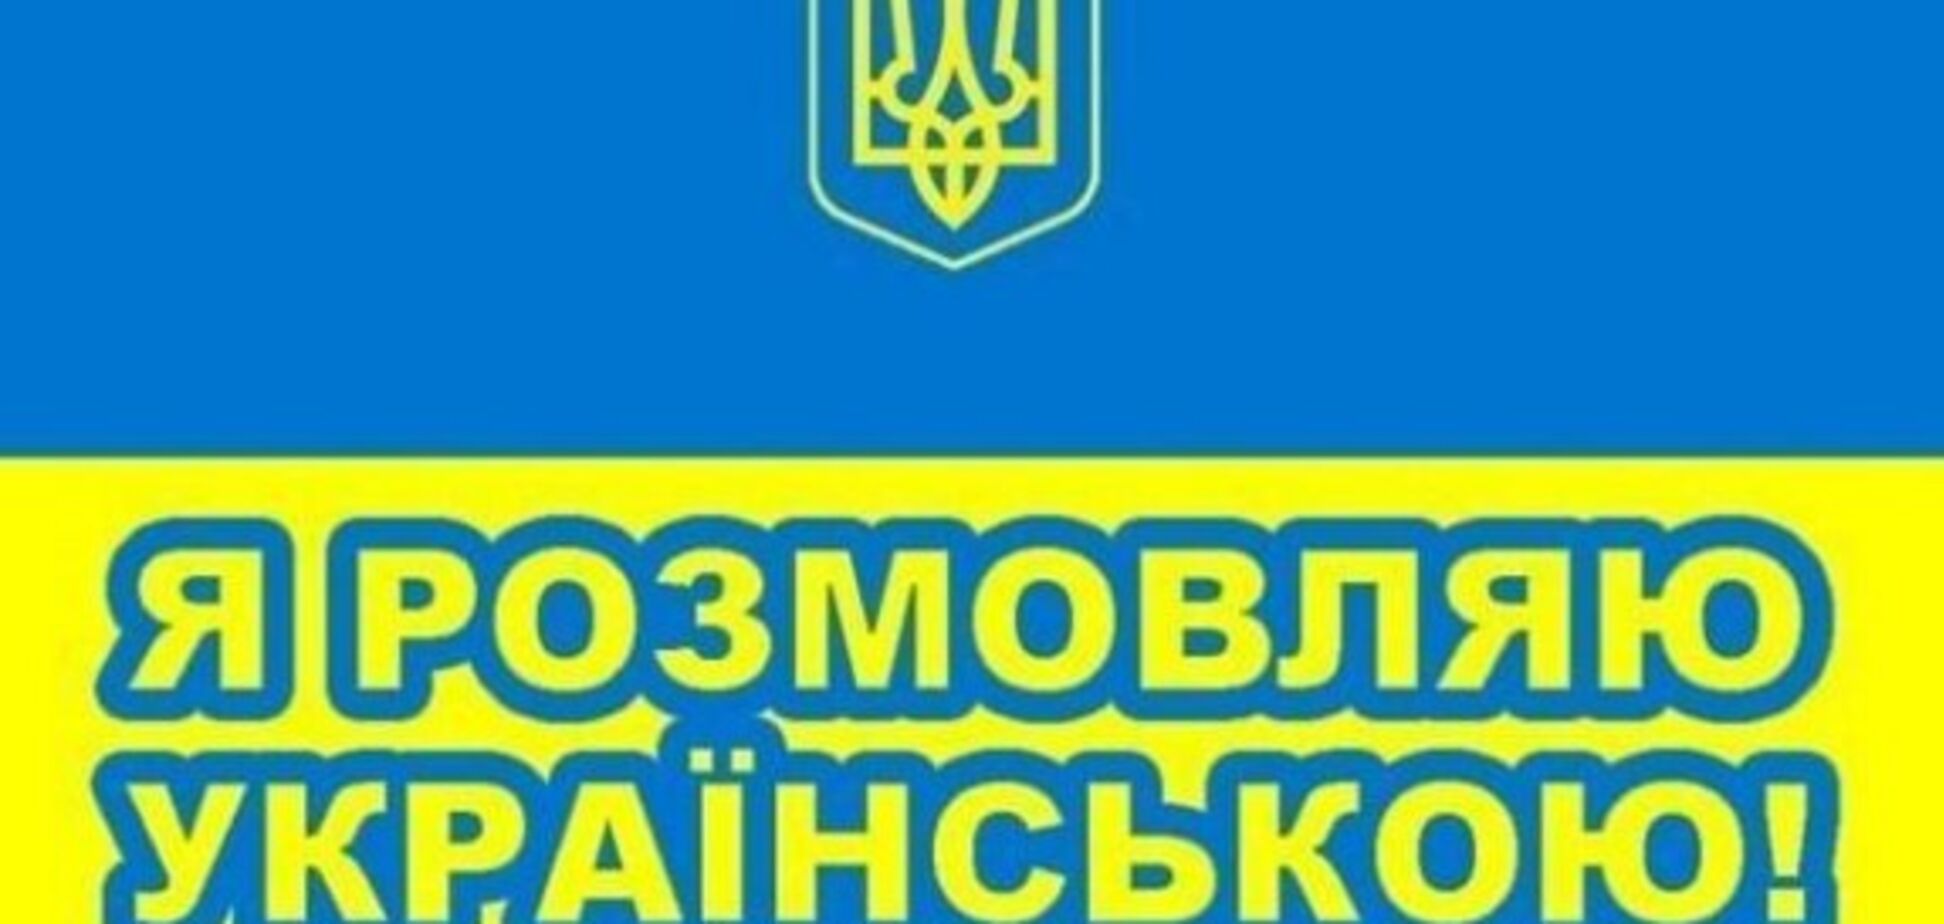 Будь ласка, українською: в Киеве прияли важное языковое решение 